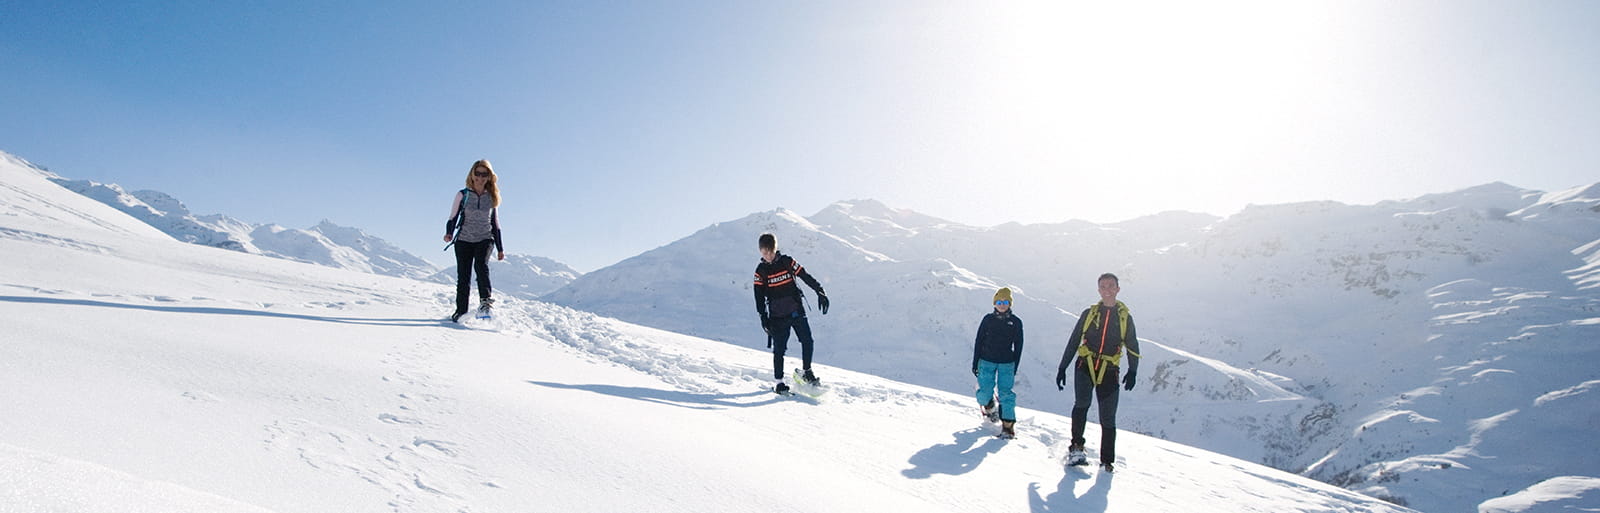 איך לבלות חופשה טובה בהרים ללא סקי?